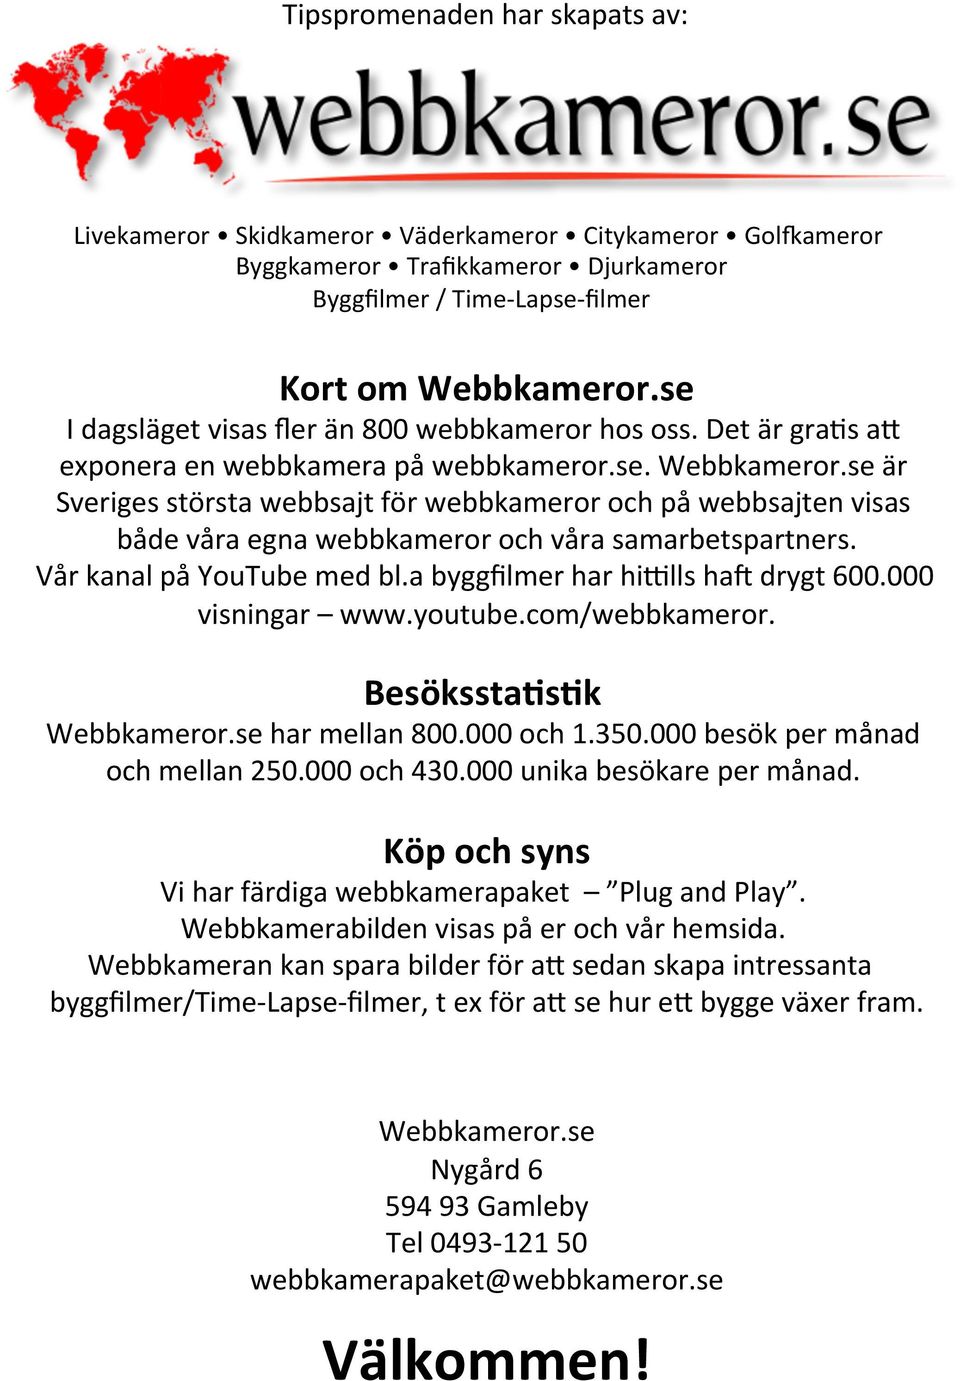 se är Sveriges största webbsajt för webbkameror och på webbsajten visas både våra egna webbkameror och våra samarbetspartners. Vår kanal på YouTube med bl.a byggfilmer har hi6lls haj drygt 600.